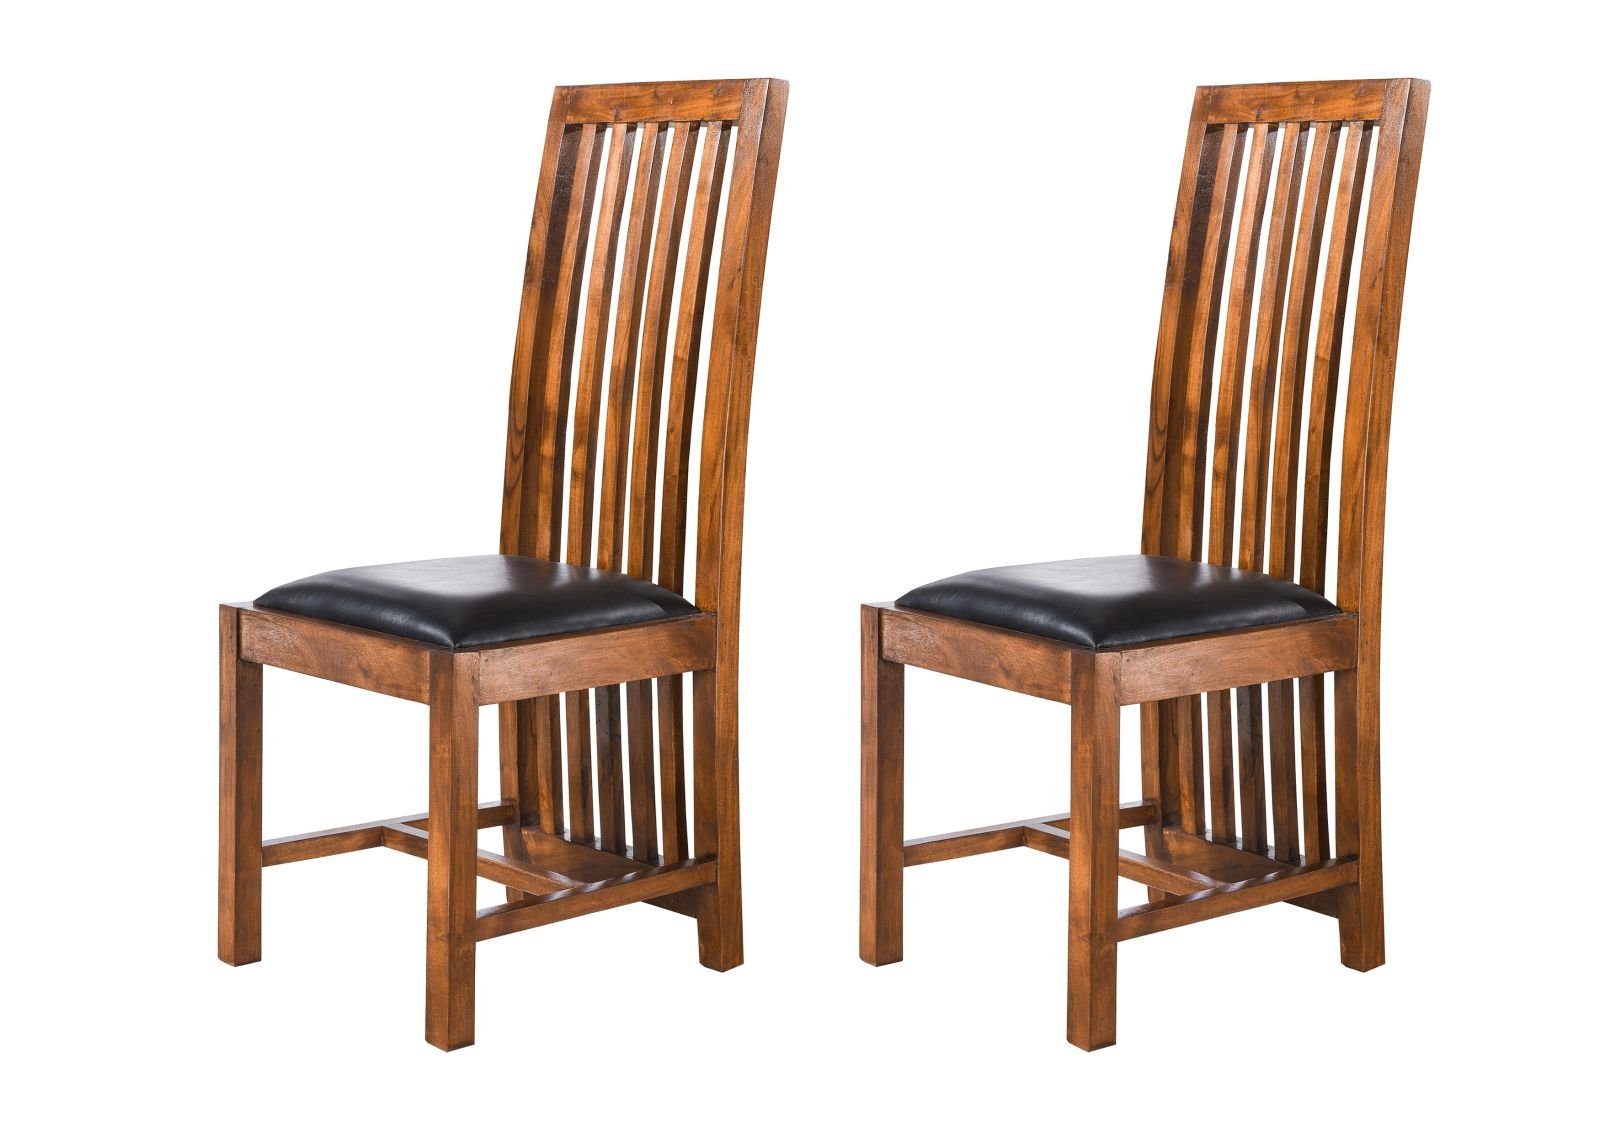 Massivmoebel24 Holzstuhl OXFORD (Extravaganter Stuhl, mit luftiger Rückenlehne die bis zum Boden reicht, im 2er Set, inklusive Polsterung, braun lackiert 43x50x50 montiert), hochwertiges Edelholz, authentische Holzadern, aufwendige Schnitzereien und Verzierungen